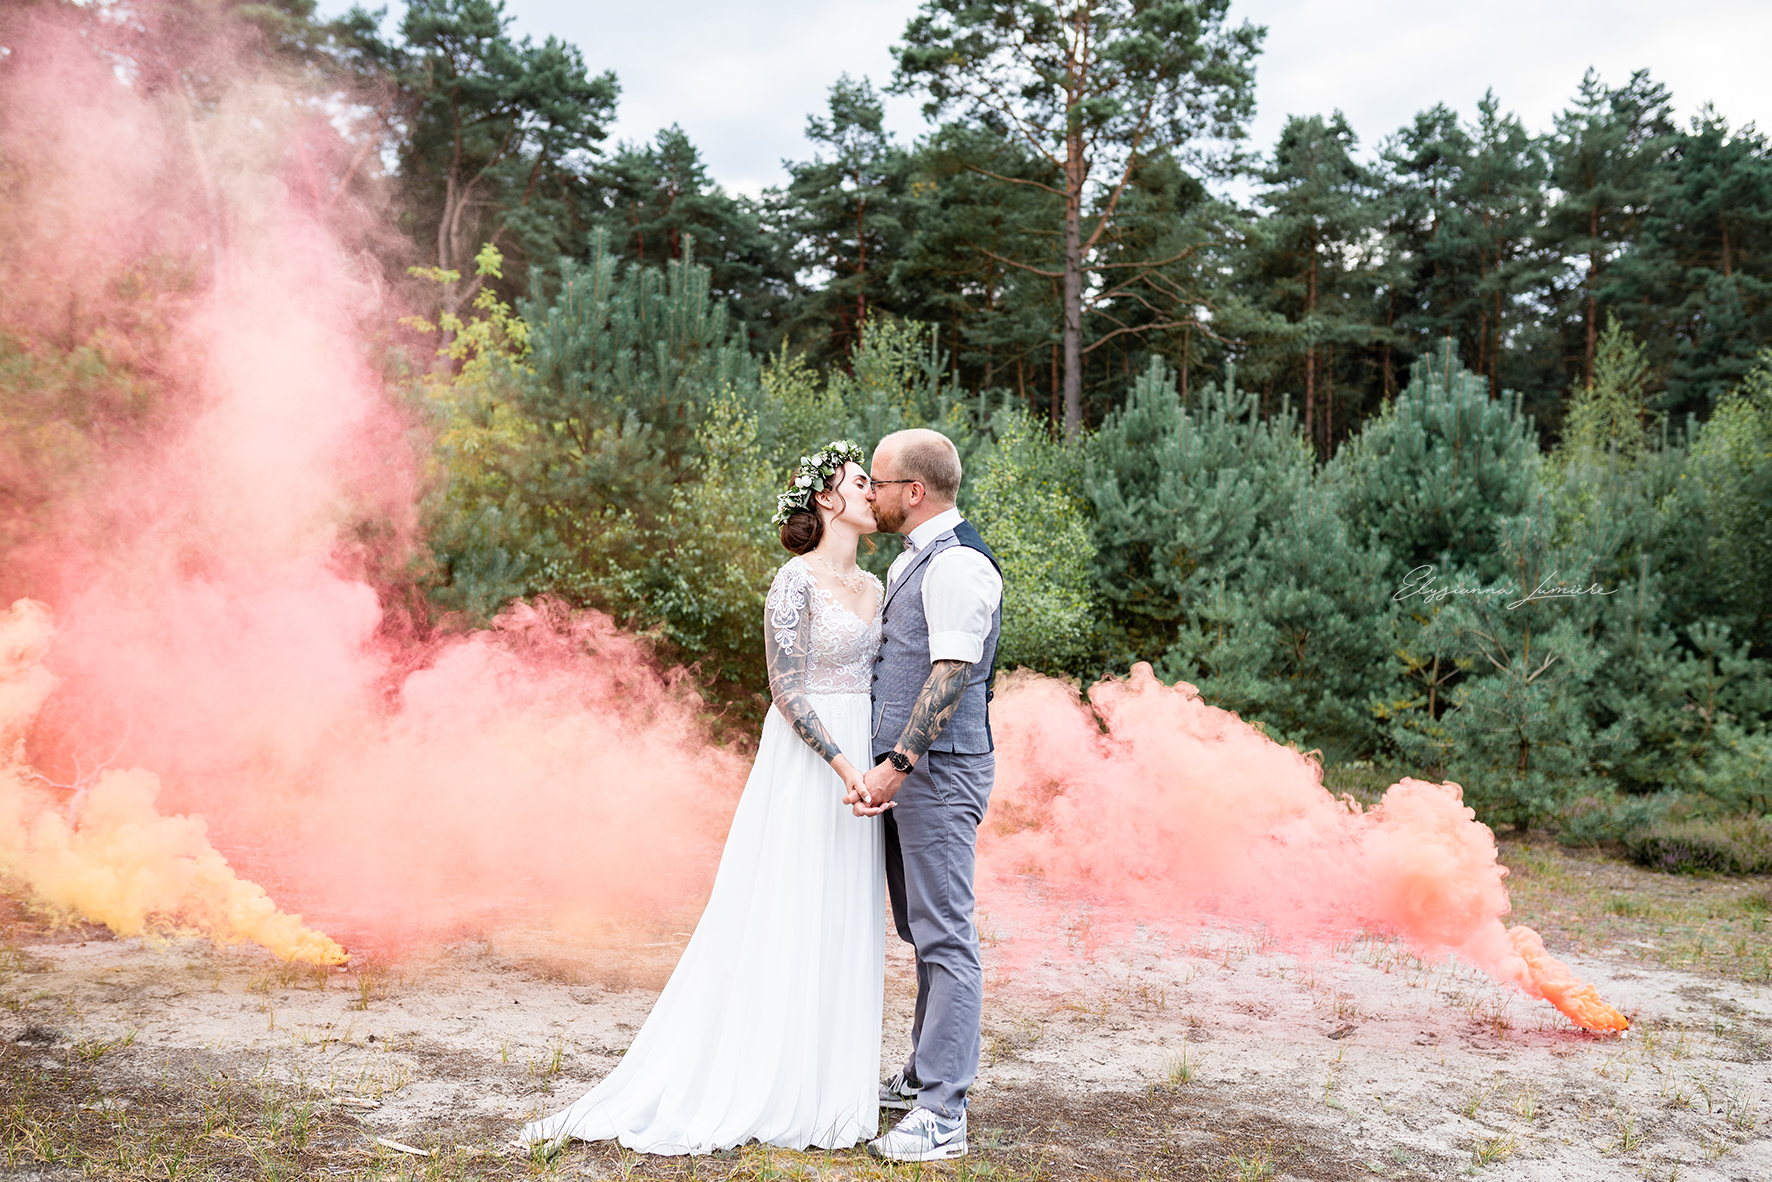 Kussbild in den Dünen mit RauchfackelnI Elysianna Lumiere Photography